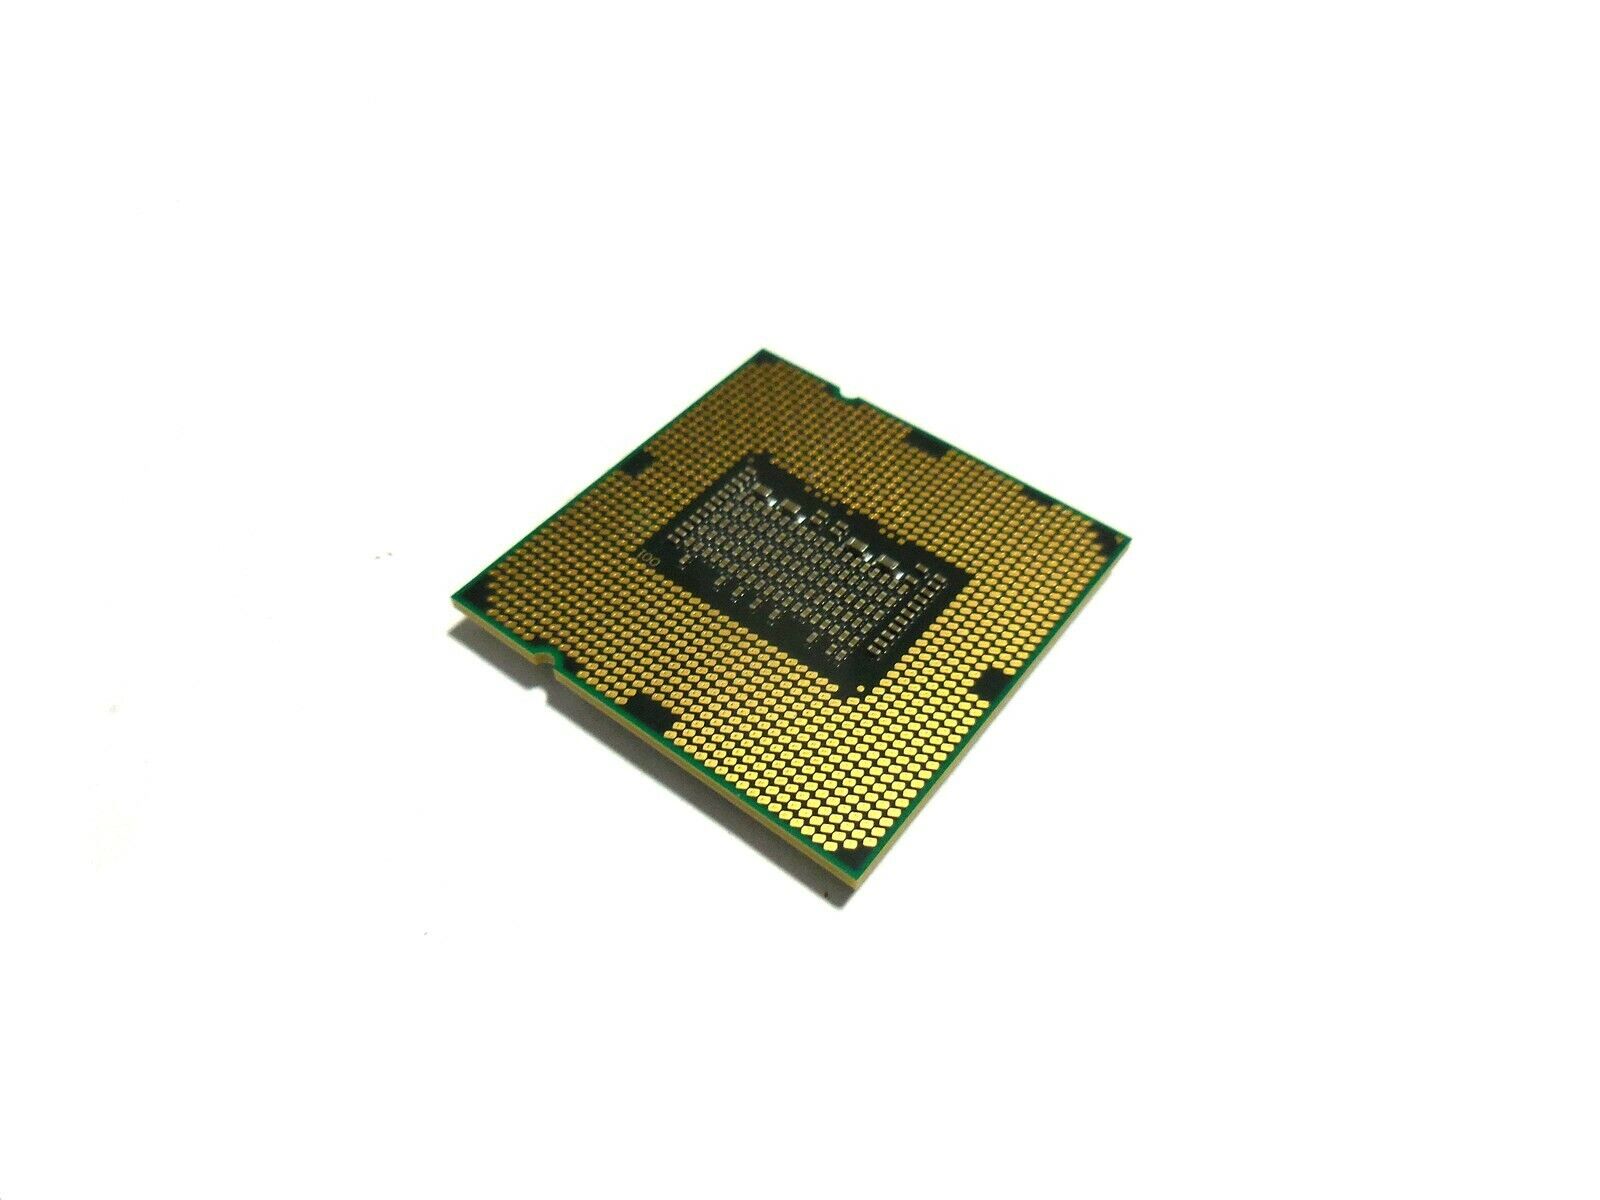 Intel Xeon X3450 2.66GHz 8MB 2.5GTs LGA1156 Quad Core Server CPU Processor SLBLD